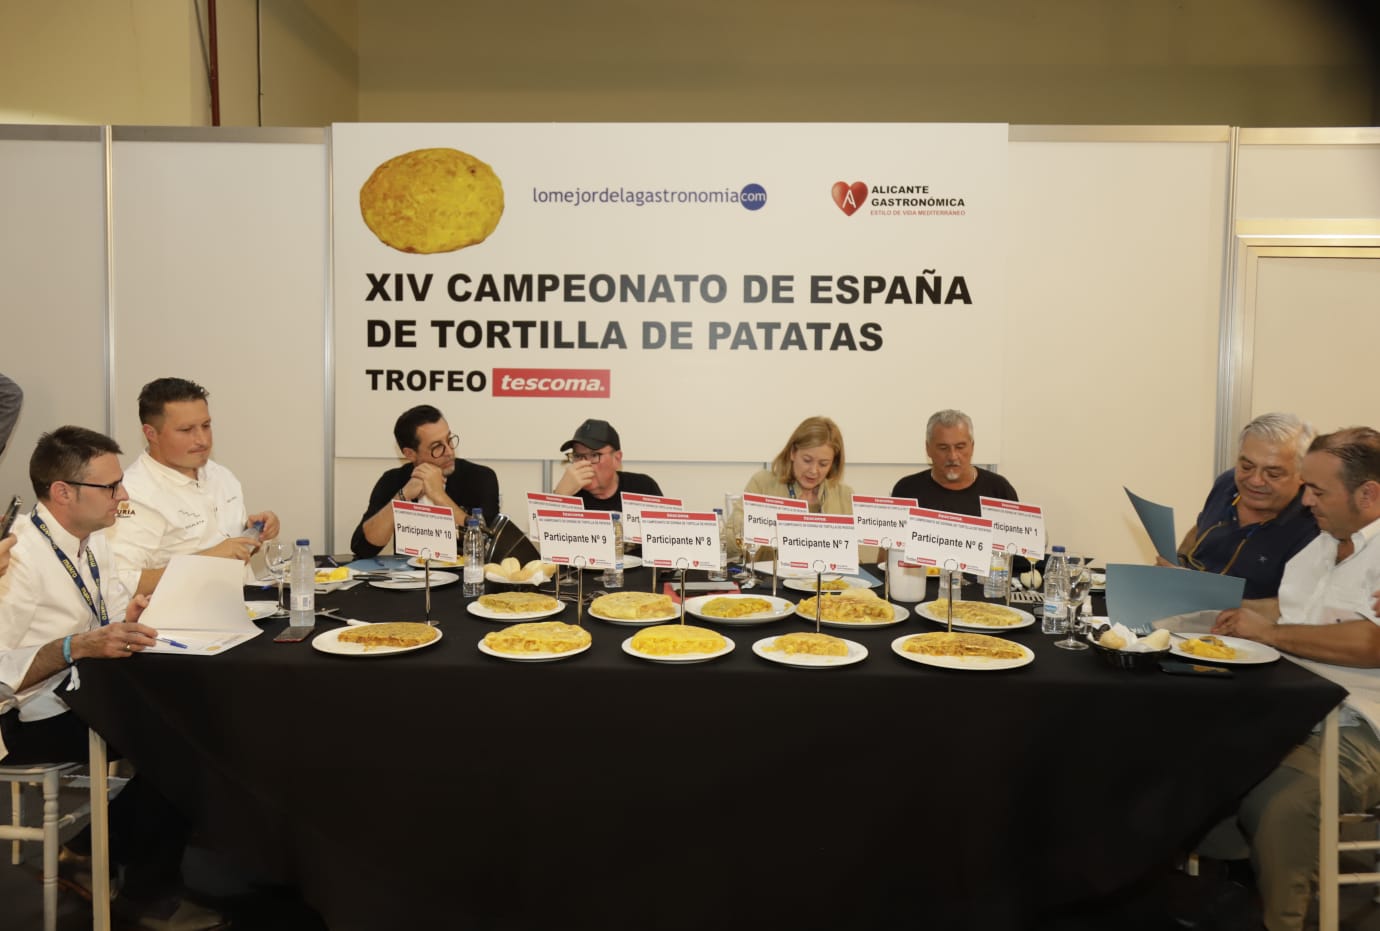 XIV Campeonato de España de Tortilla de Patatas. Trofeo Tescoma EN Alicante Gastronómica